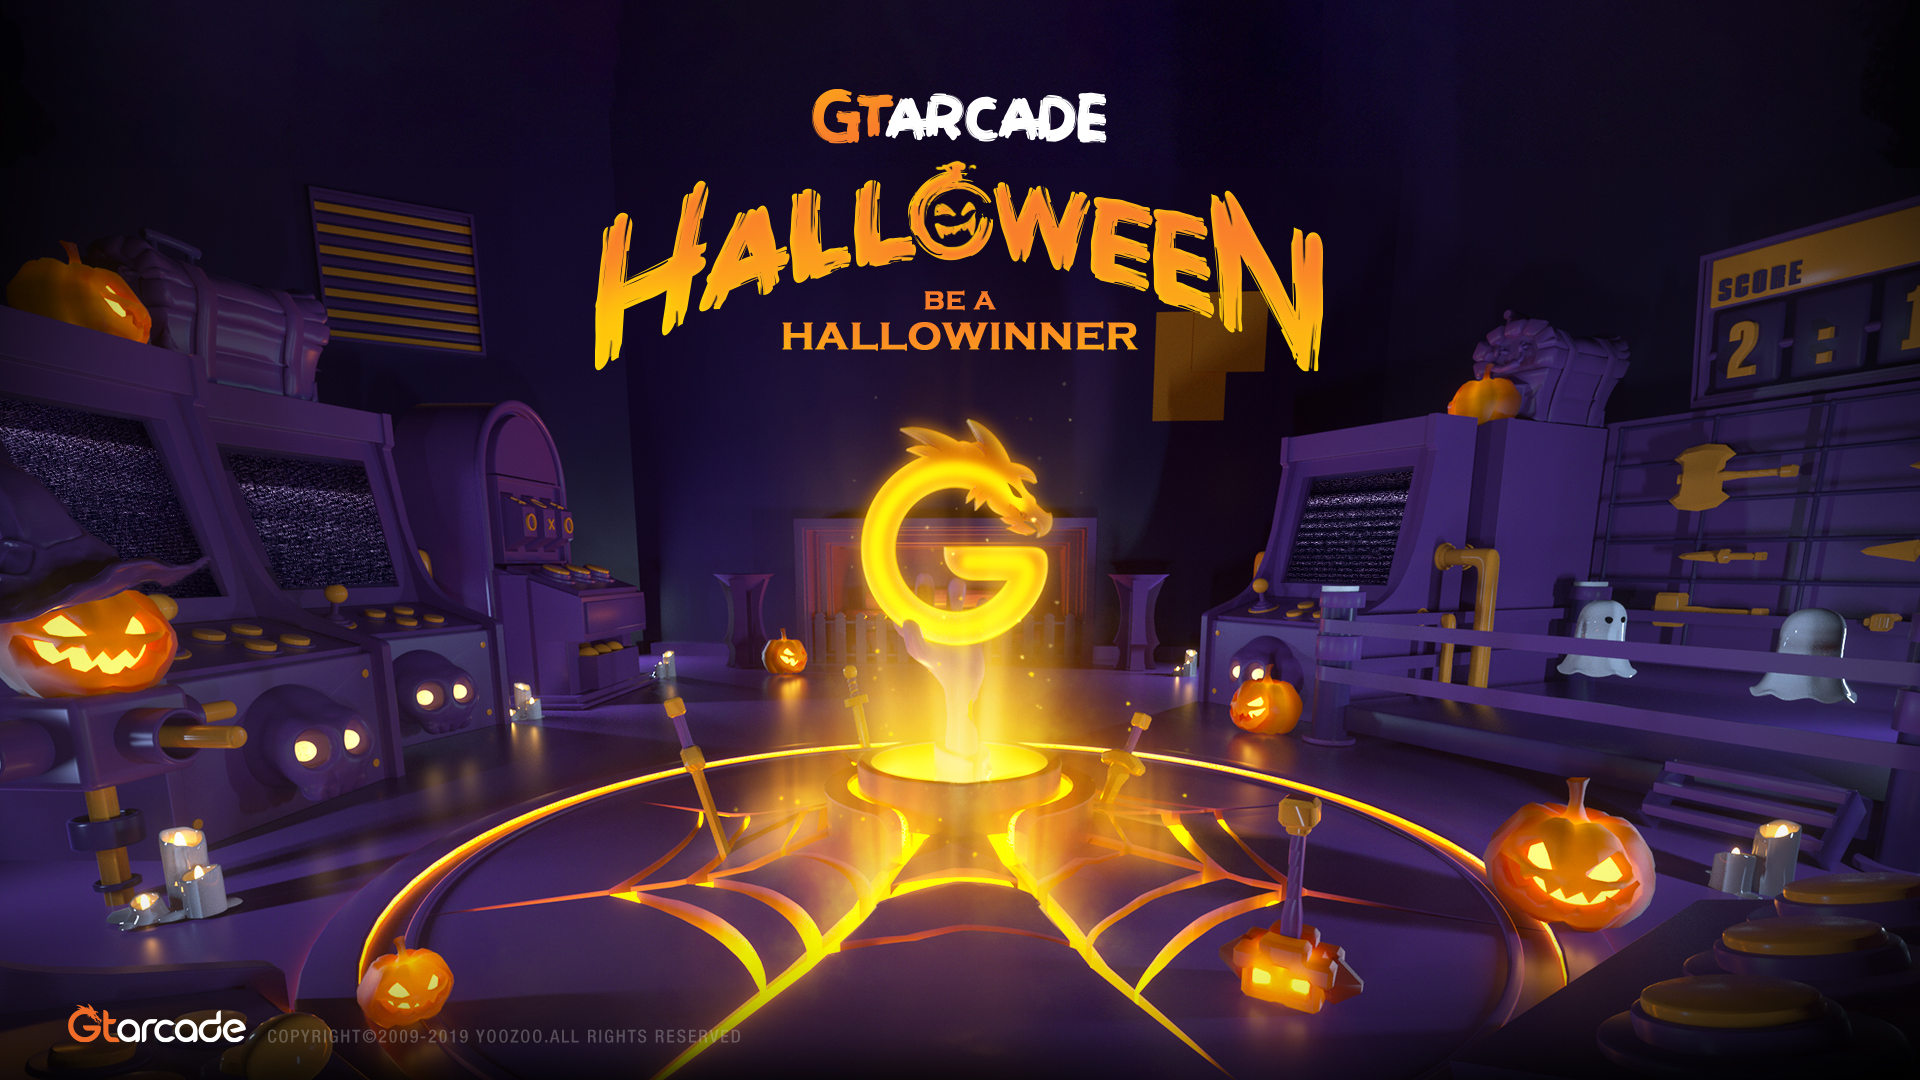 GTarcade Halloween Video